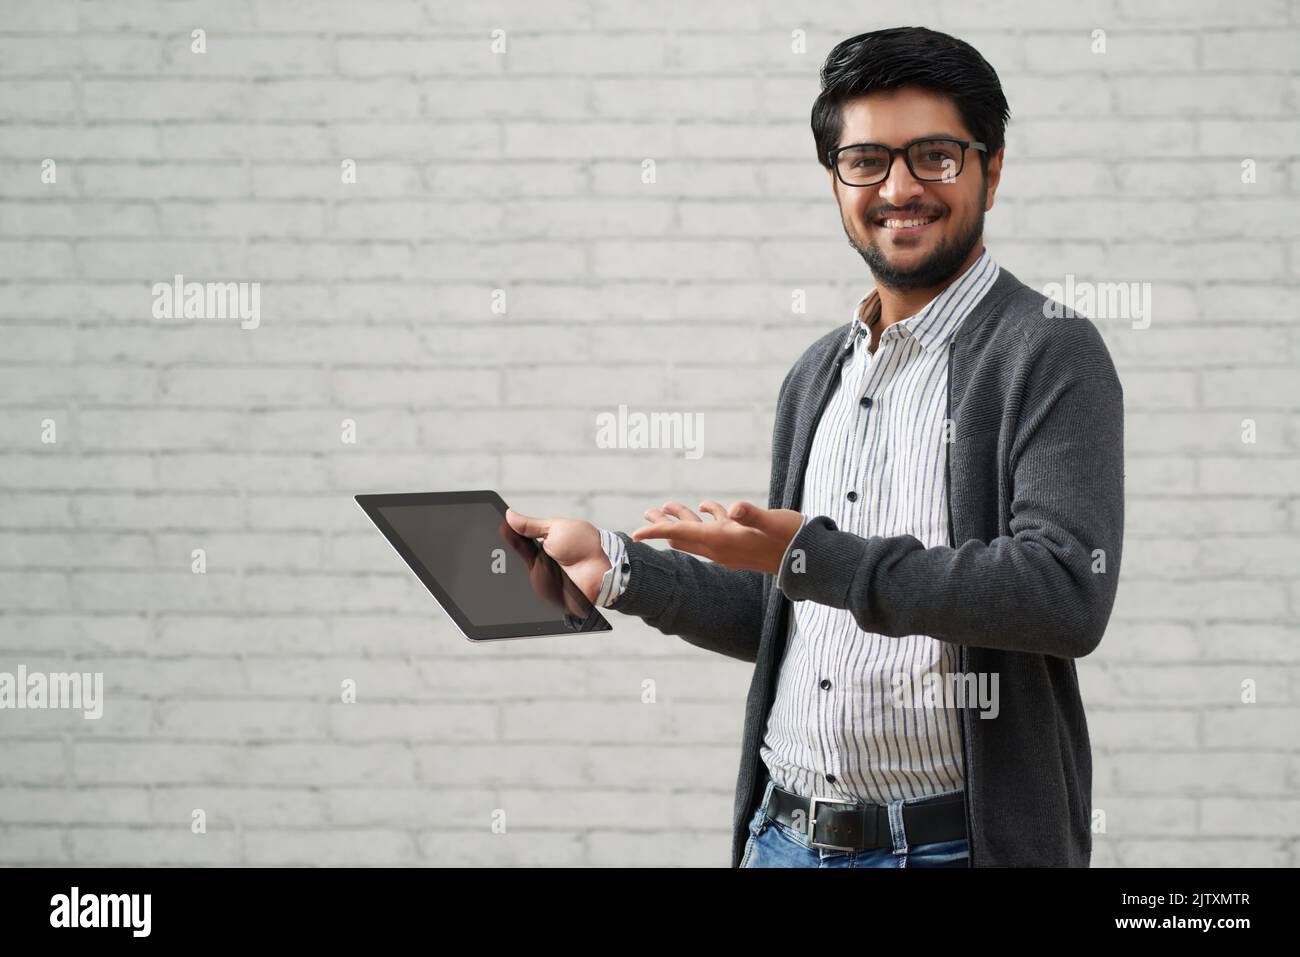 Directeur de la société informatique indienne qui présente une tablette avec une nouvelle application Banque D'Images